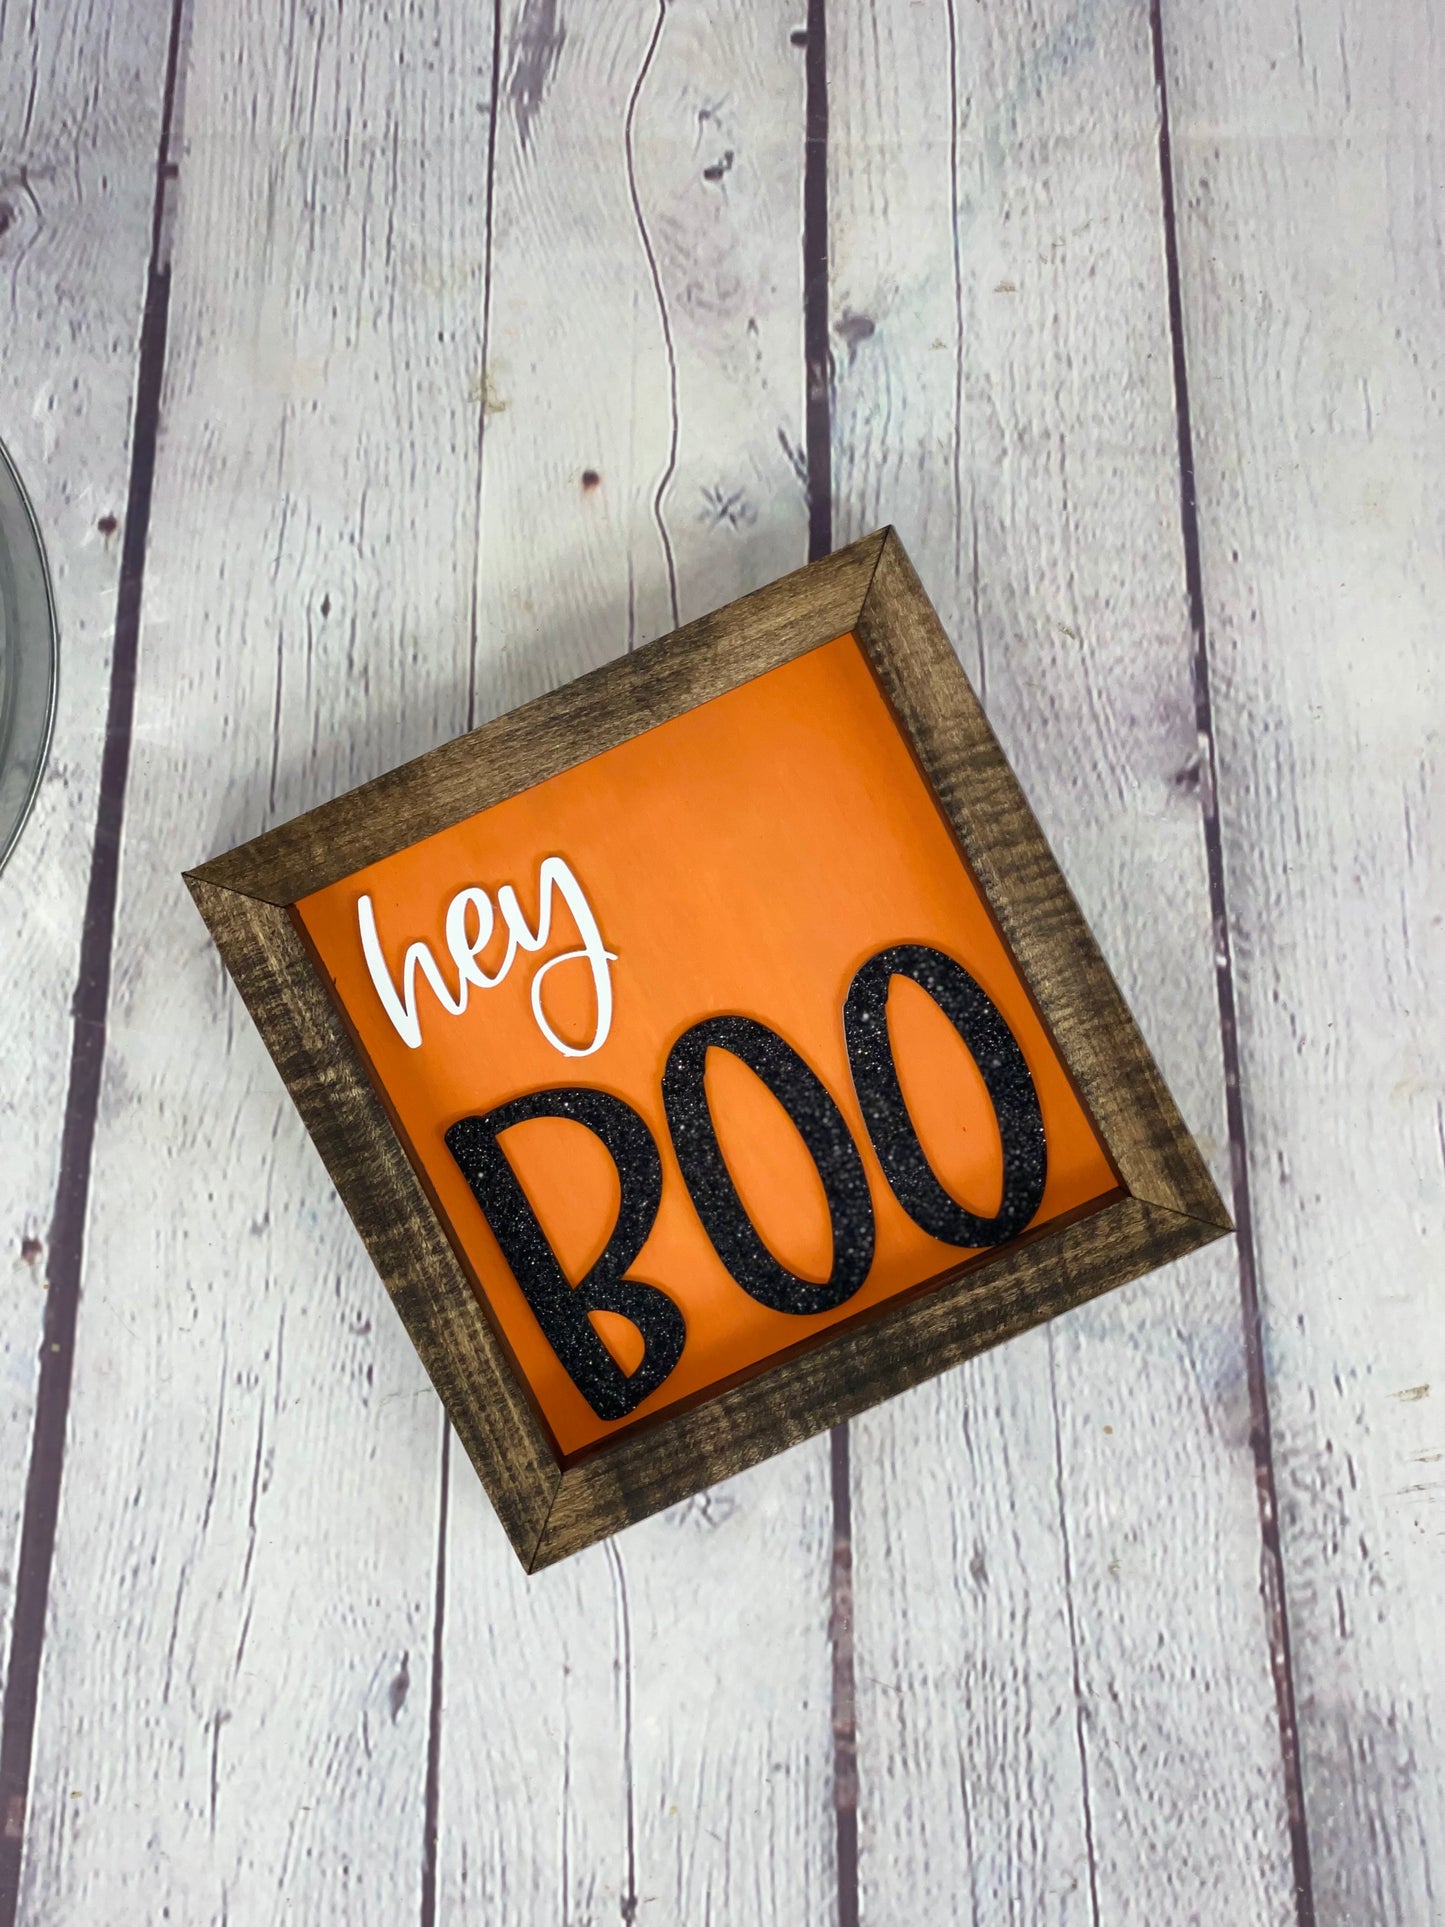 Hey Boo Halloween Farmhouse Sign | Fall Decor | Fall Sign | Halloween 3D Sign | Halloween Decor | Halloween Sign